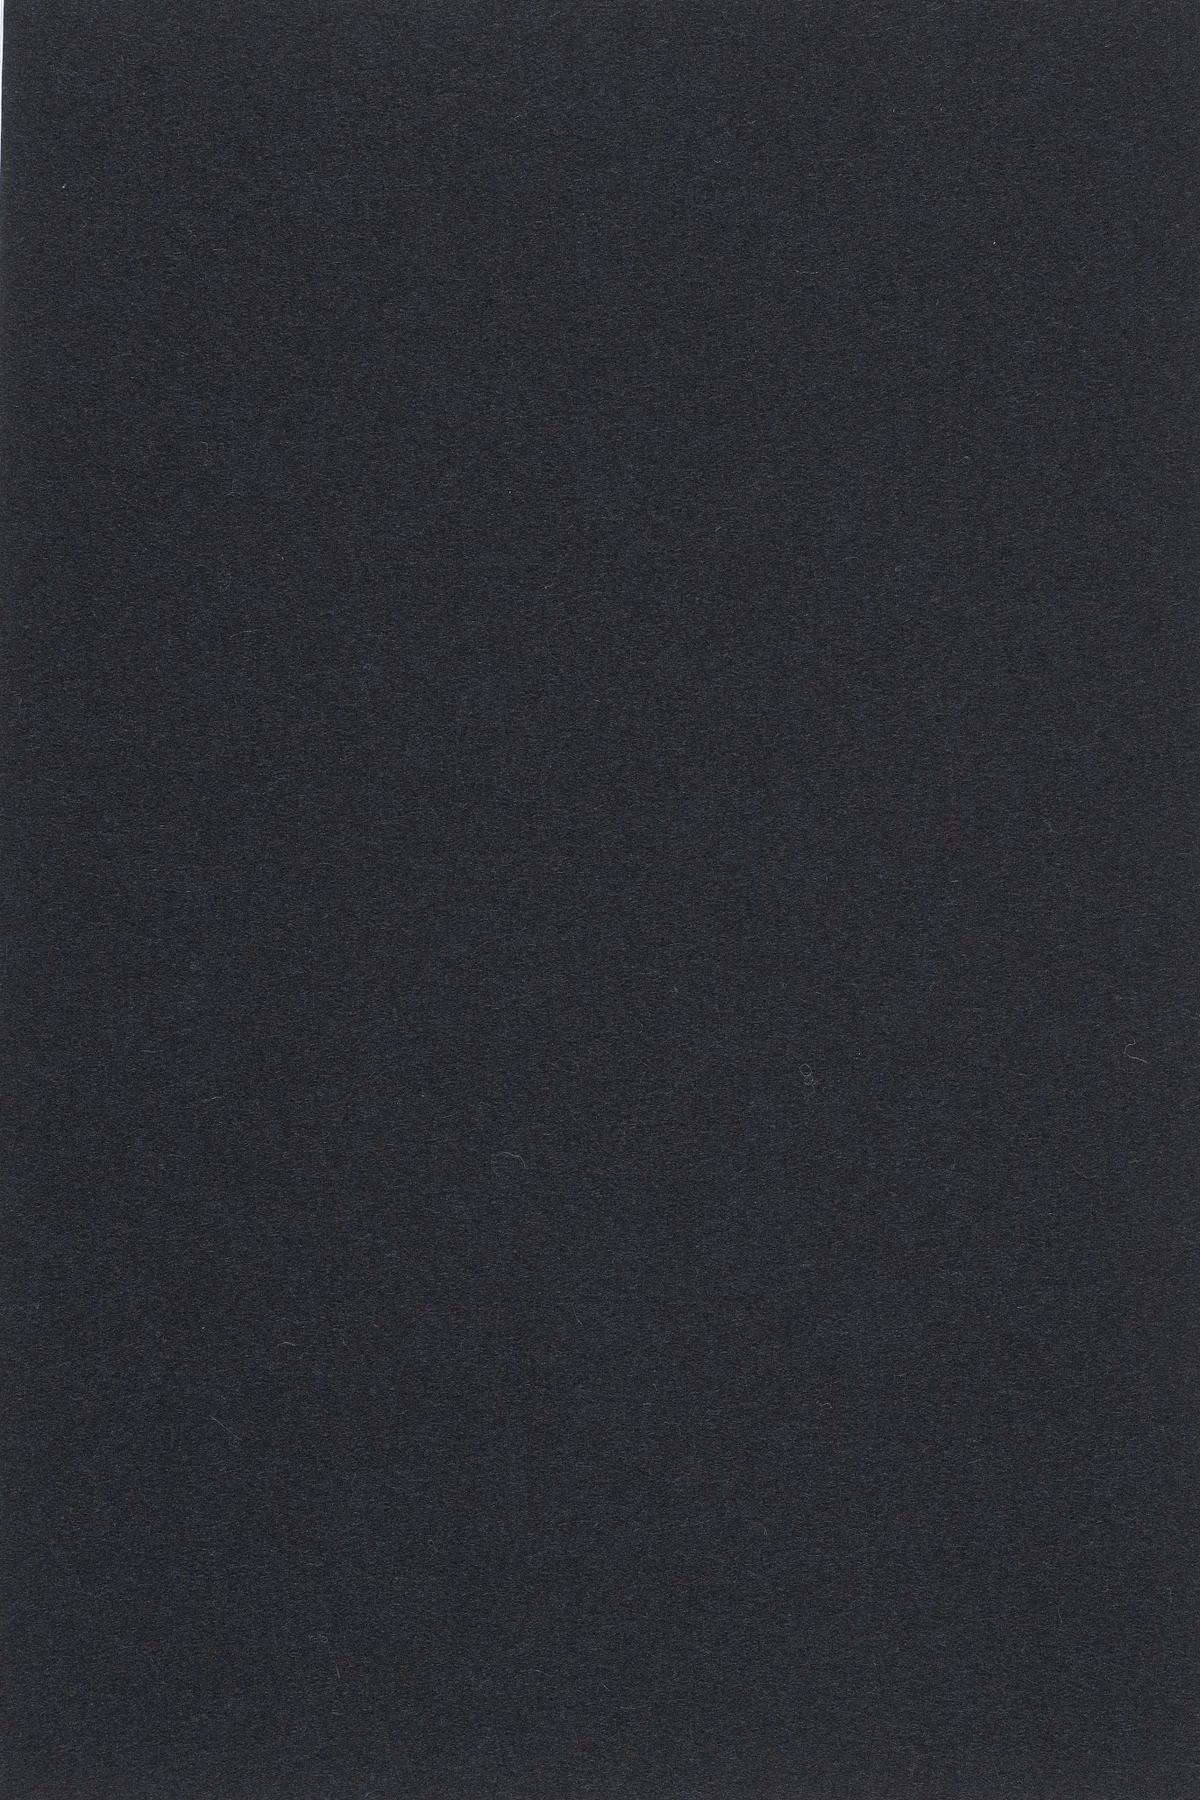 Fabric sample Divina 3 191 black